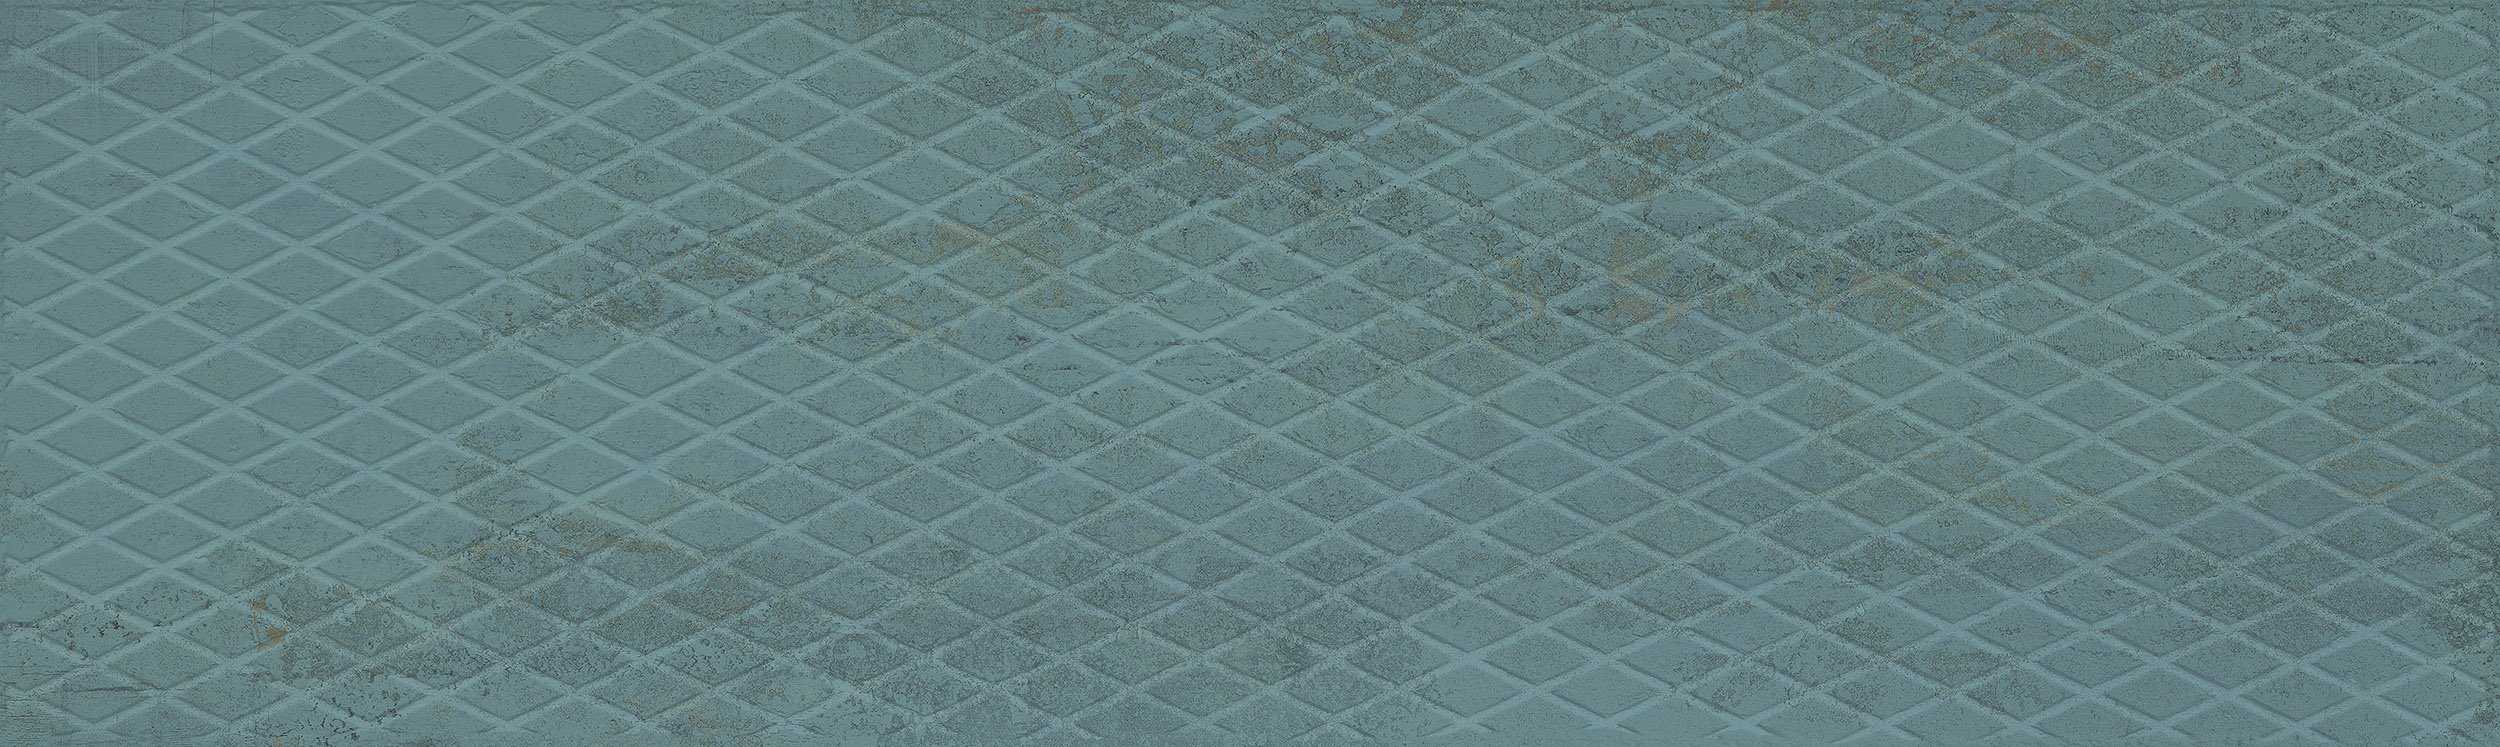 Wandfliese Dekor Metalloptik grün türkis 30x100cm "Metallic Wall Green Plate" rektifiziert 